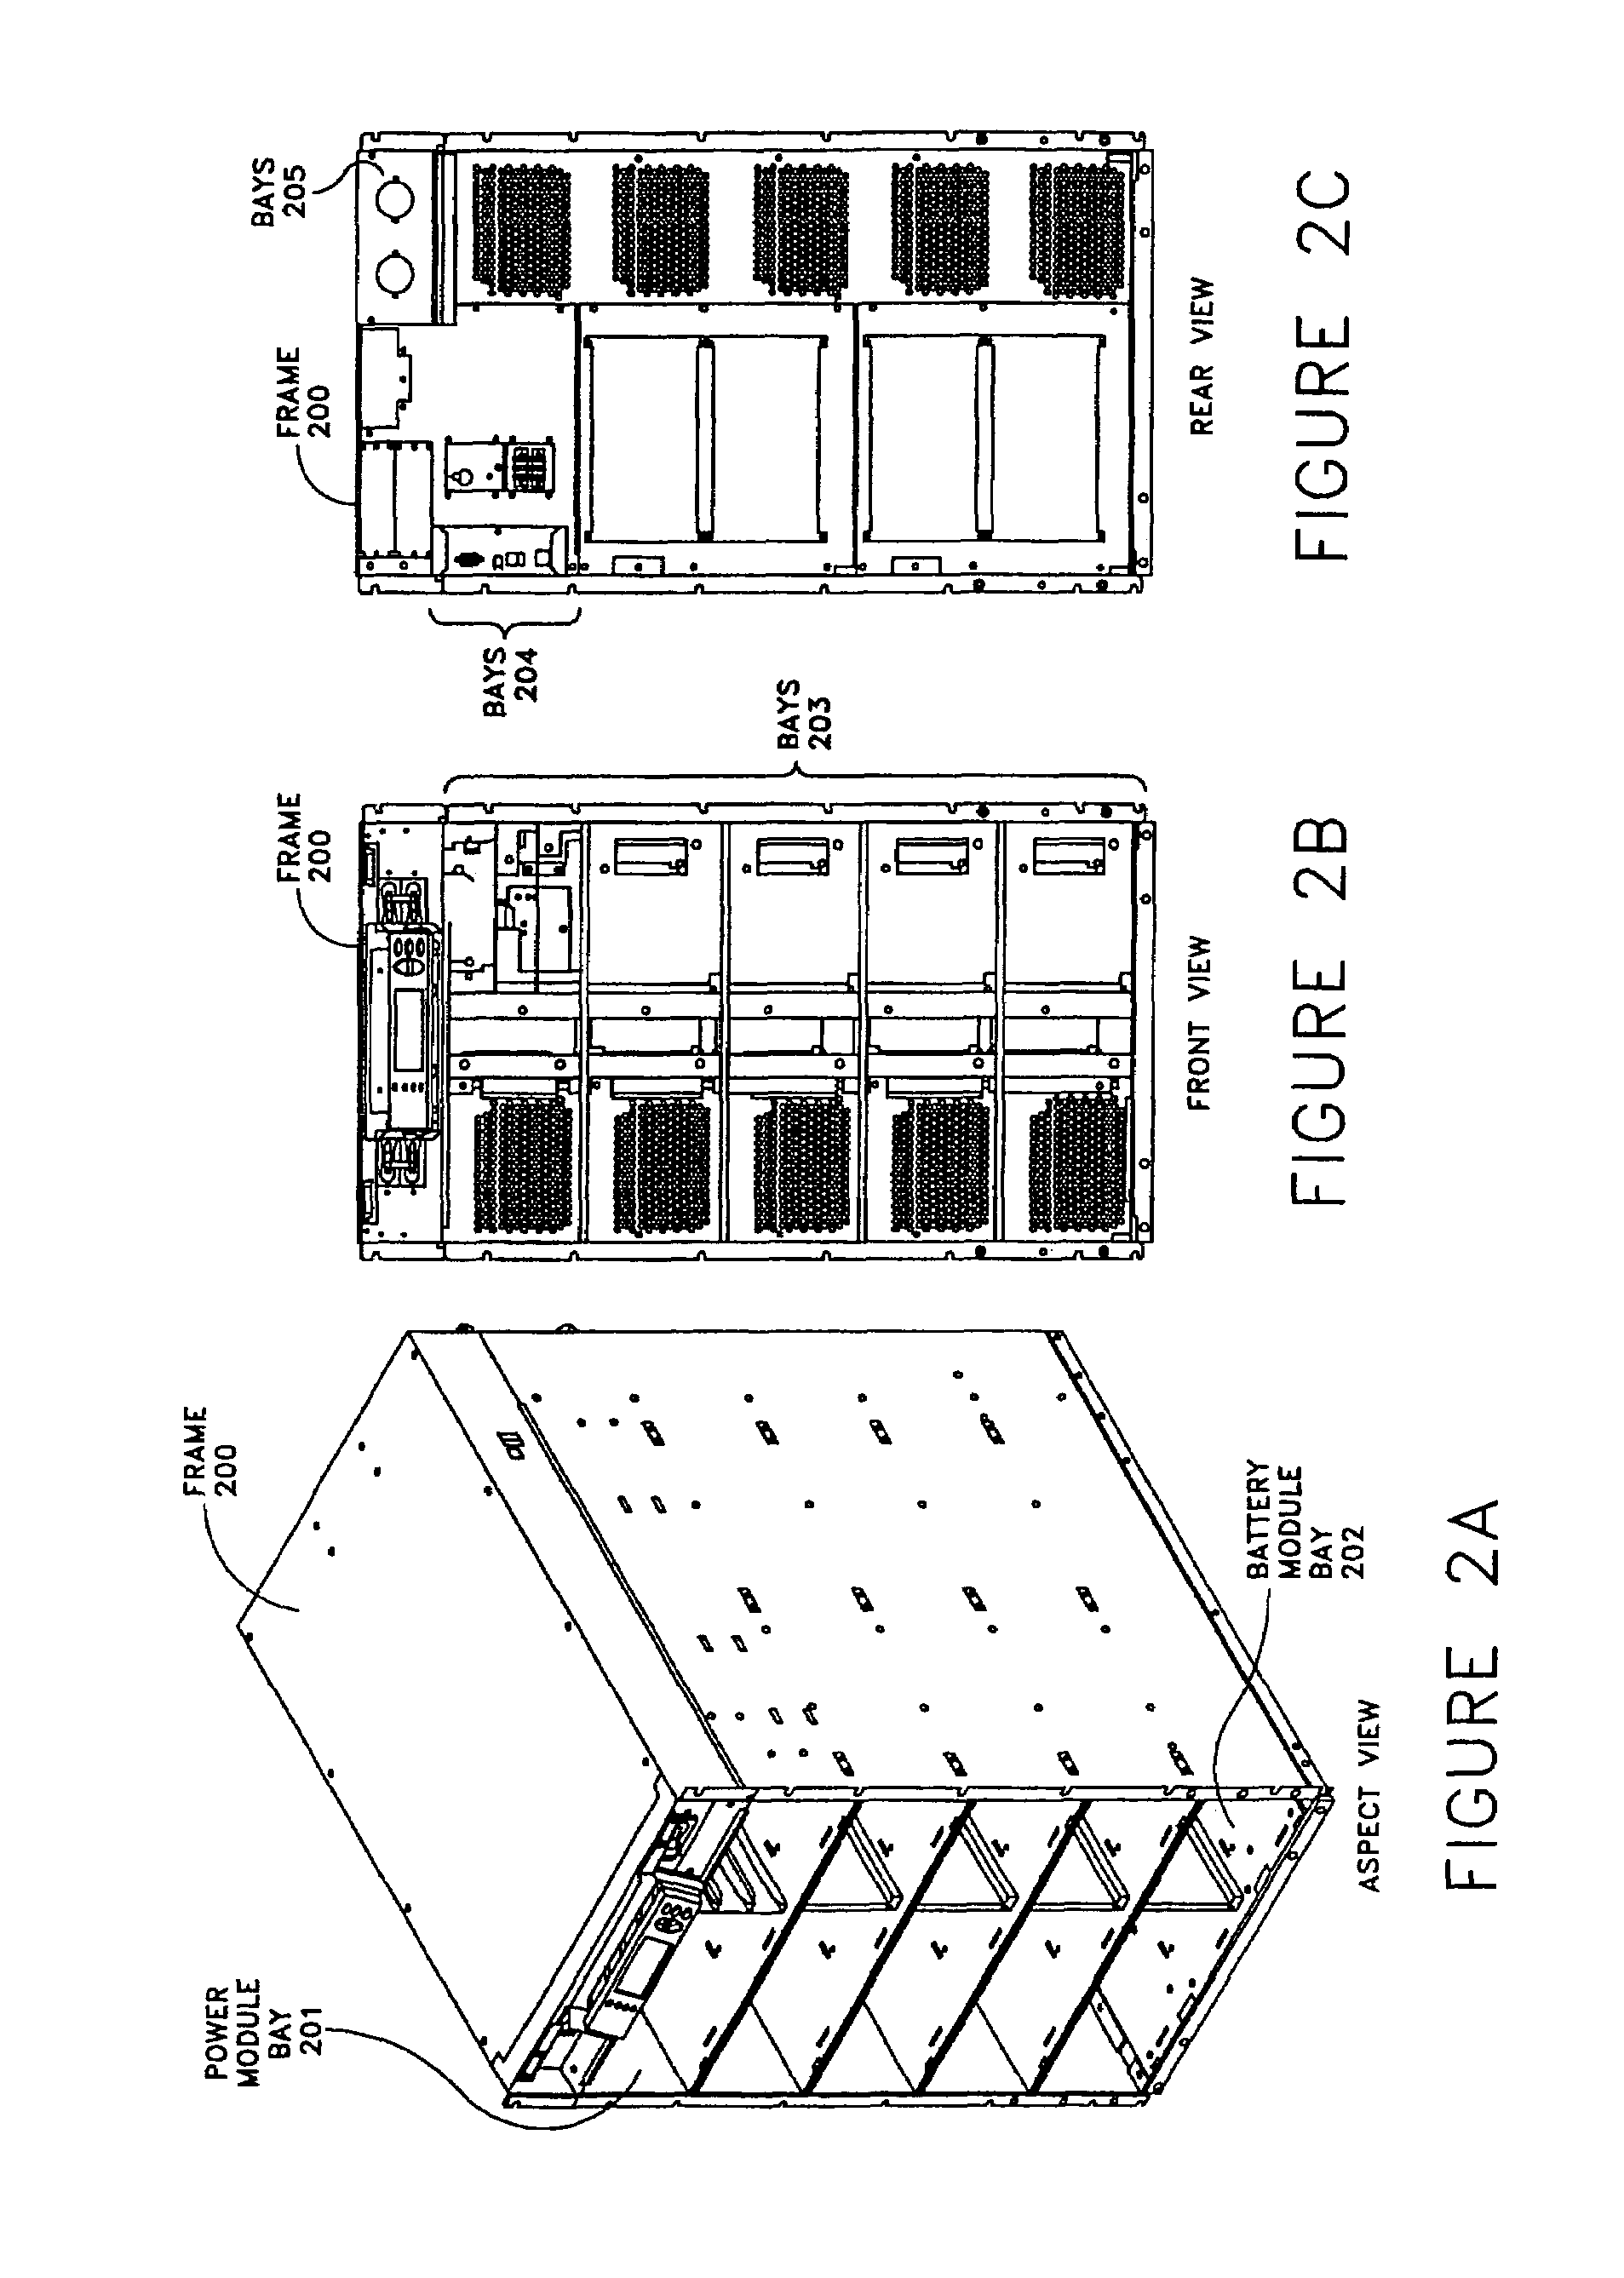 Modular UPS